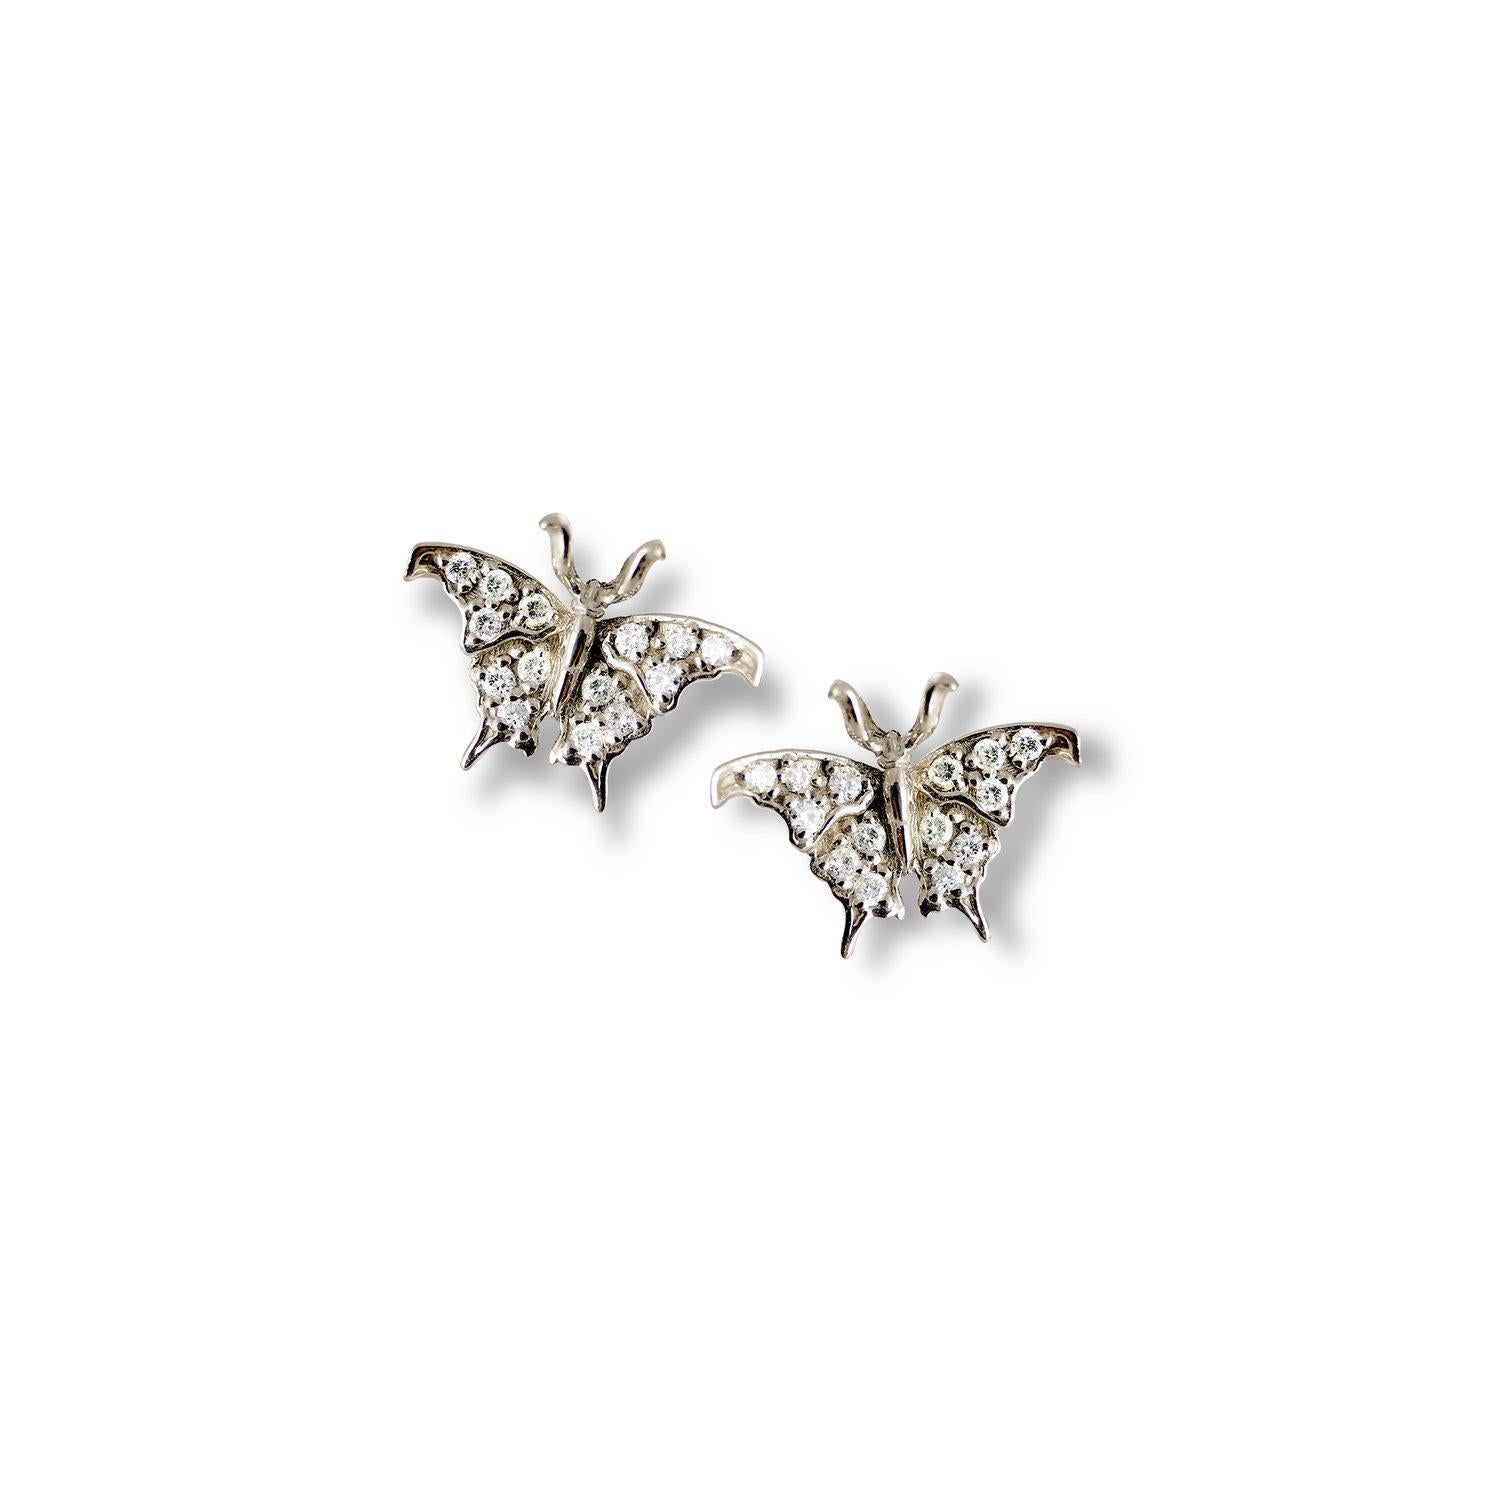 Erleben Sie den Zauber zarter Schönheit mit unseren kleinen Schmetterlings-Diamantohrringen aus bezauberndem Gelbgold. Diese bezaubernden Ohrringe verwandeln Ihre Ohren in verführerische Aprikosenblüten und versprühen einen unwiderstehlichen